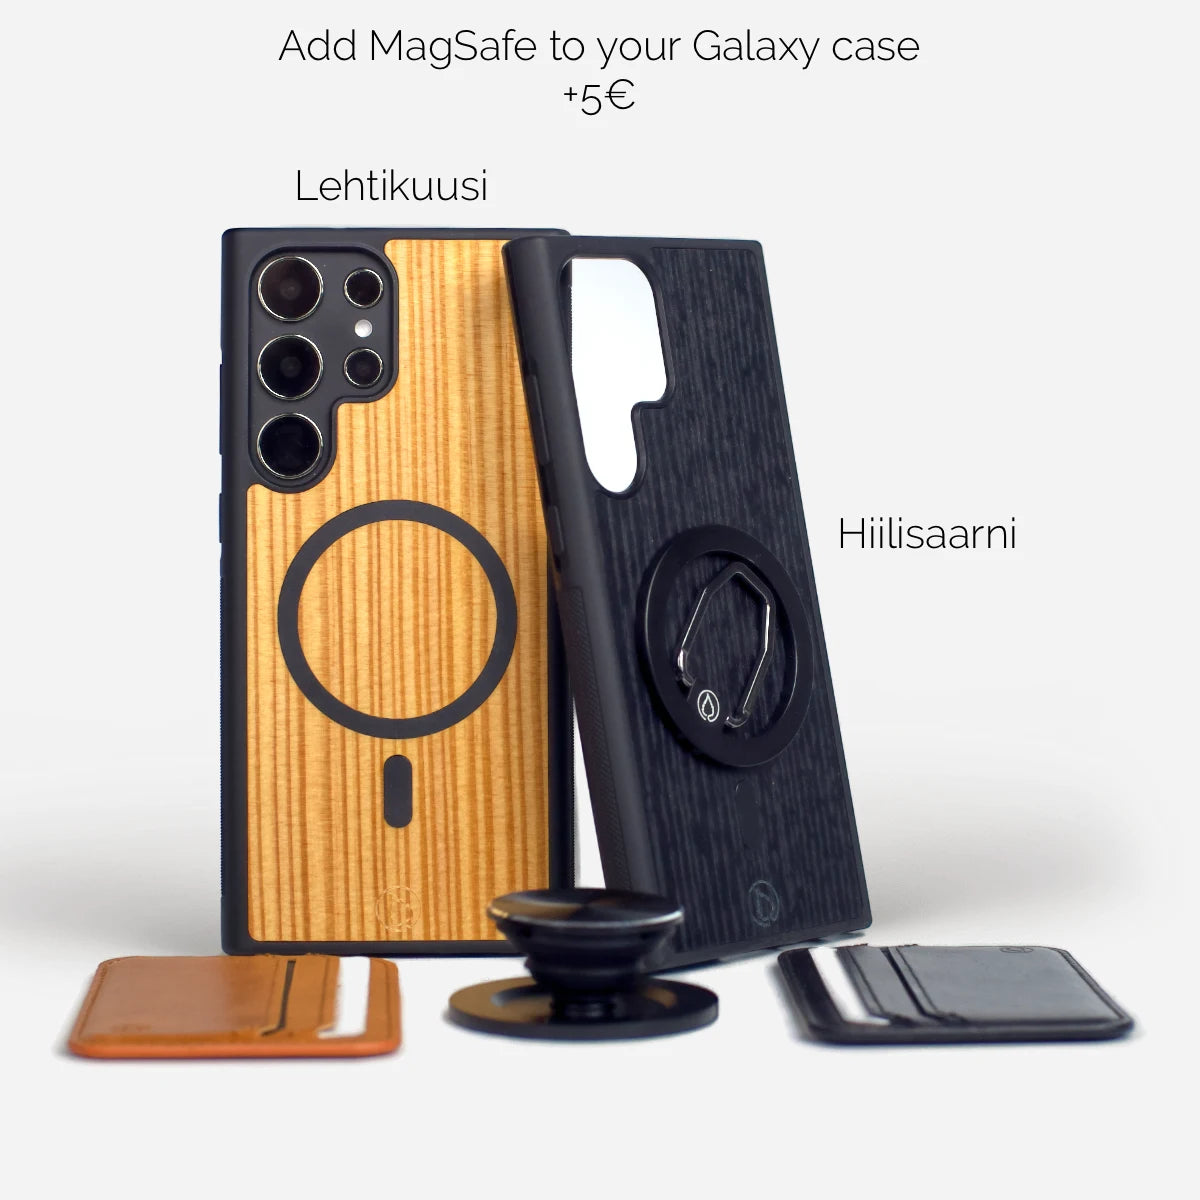 Puiset MagSafe magneetti Samsung Galaxy puhelimen kuoret kotelot suojakuoret useille malleille.